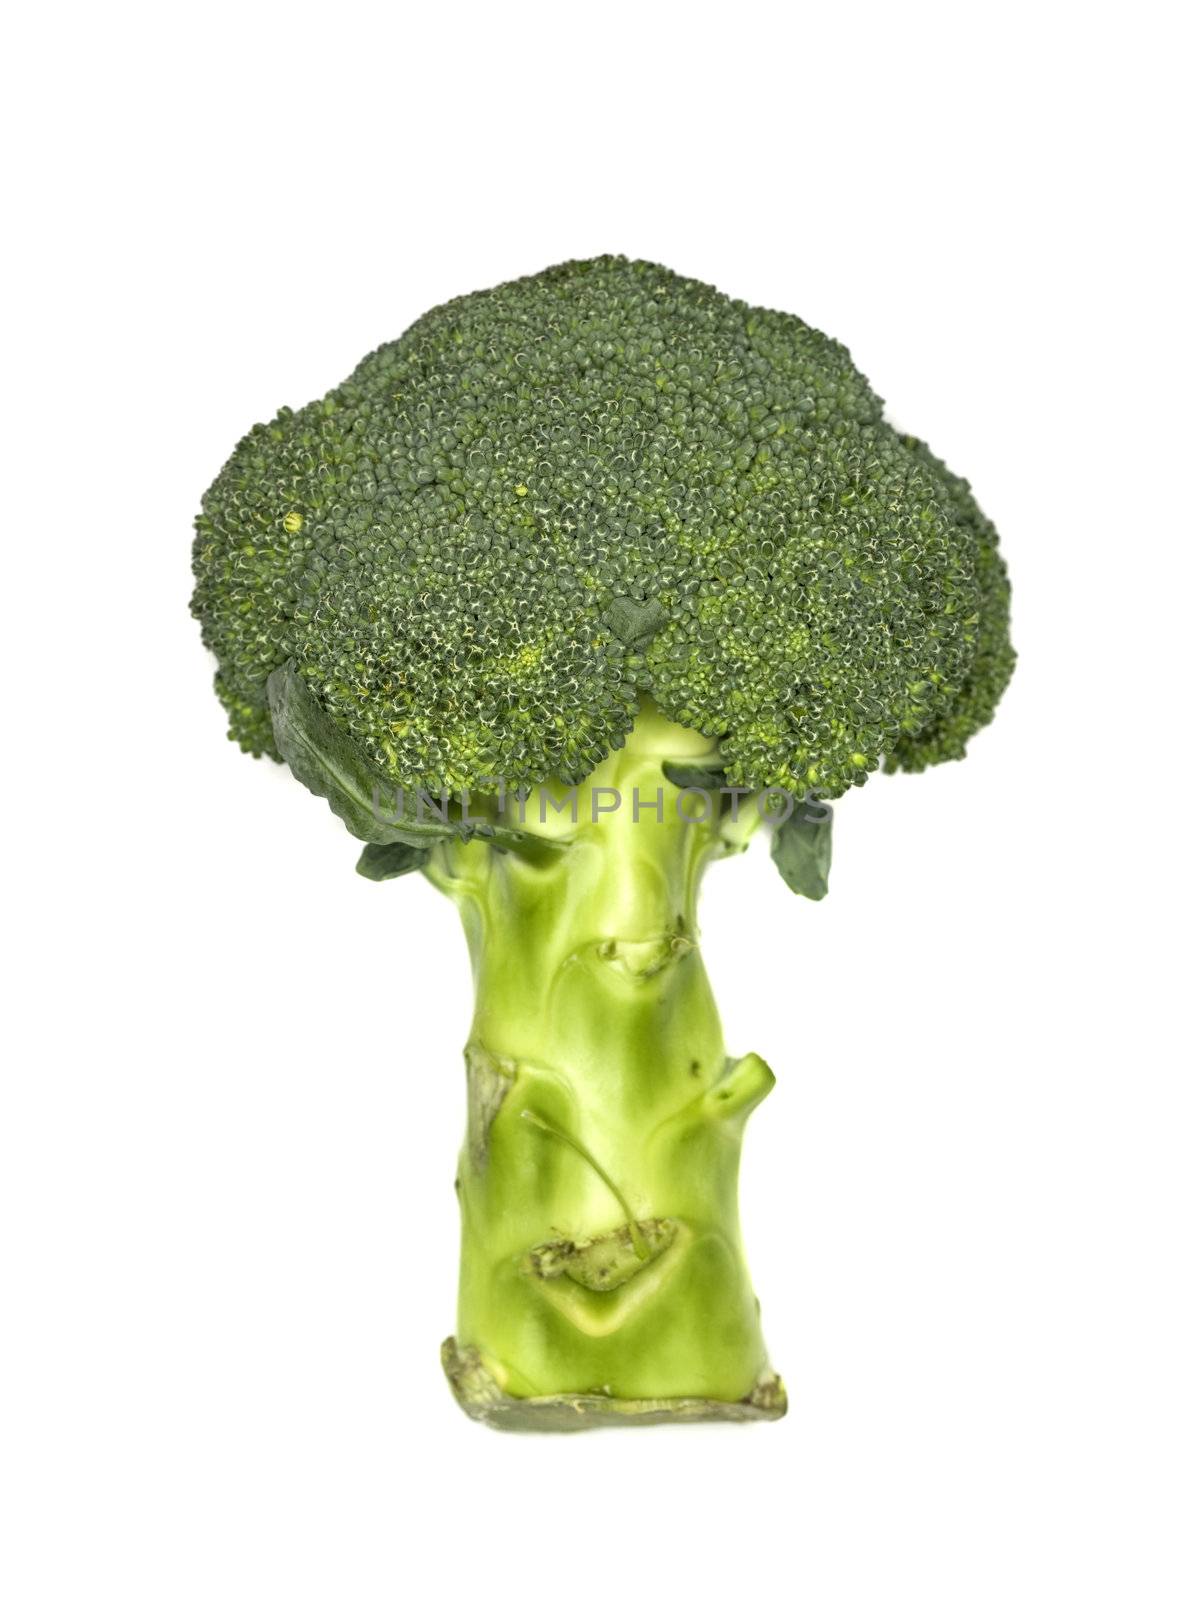 Fresh broccoli by gemenacom